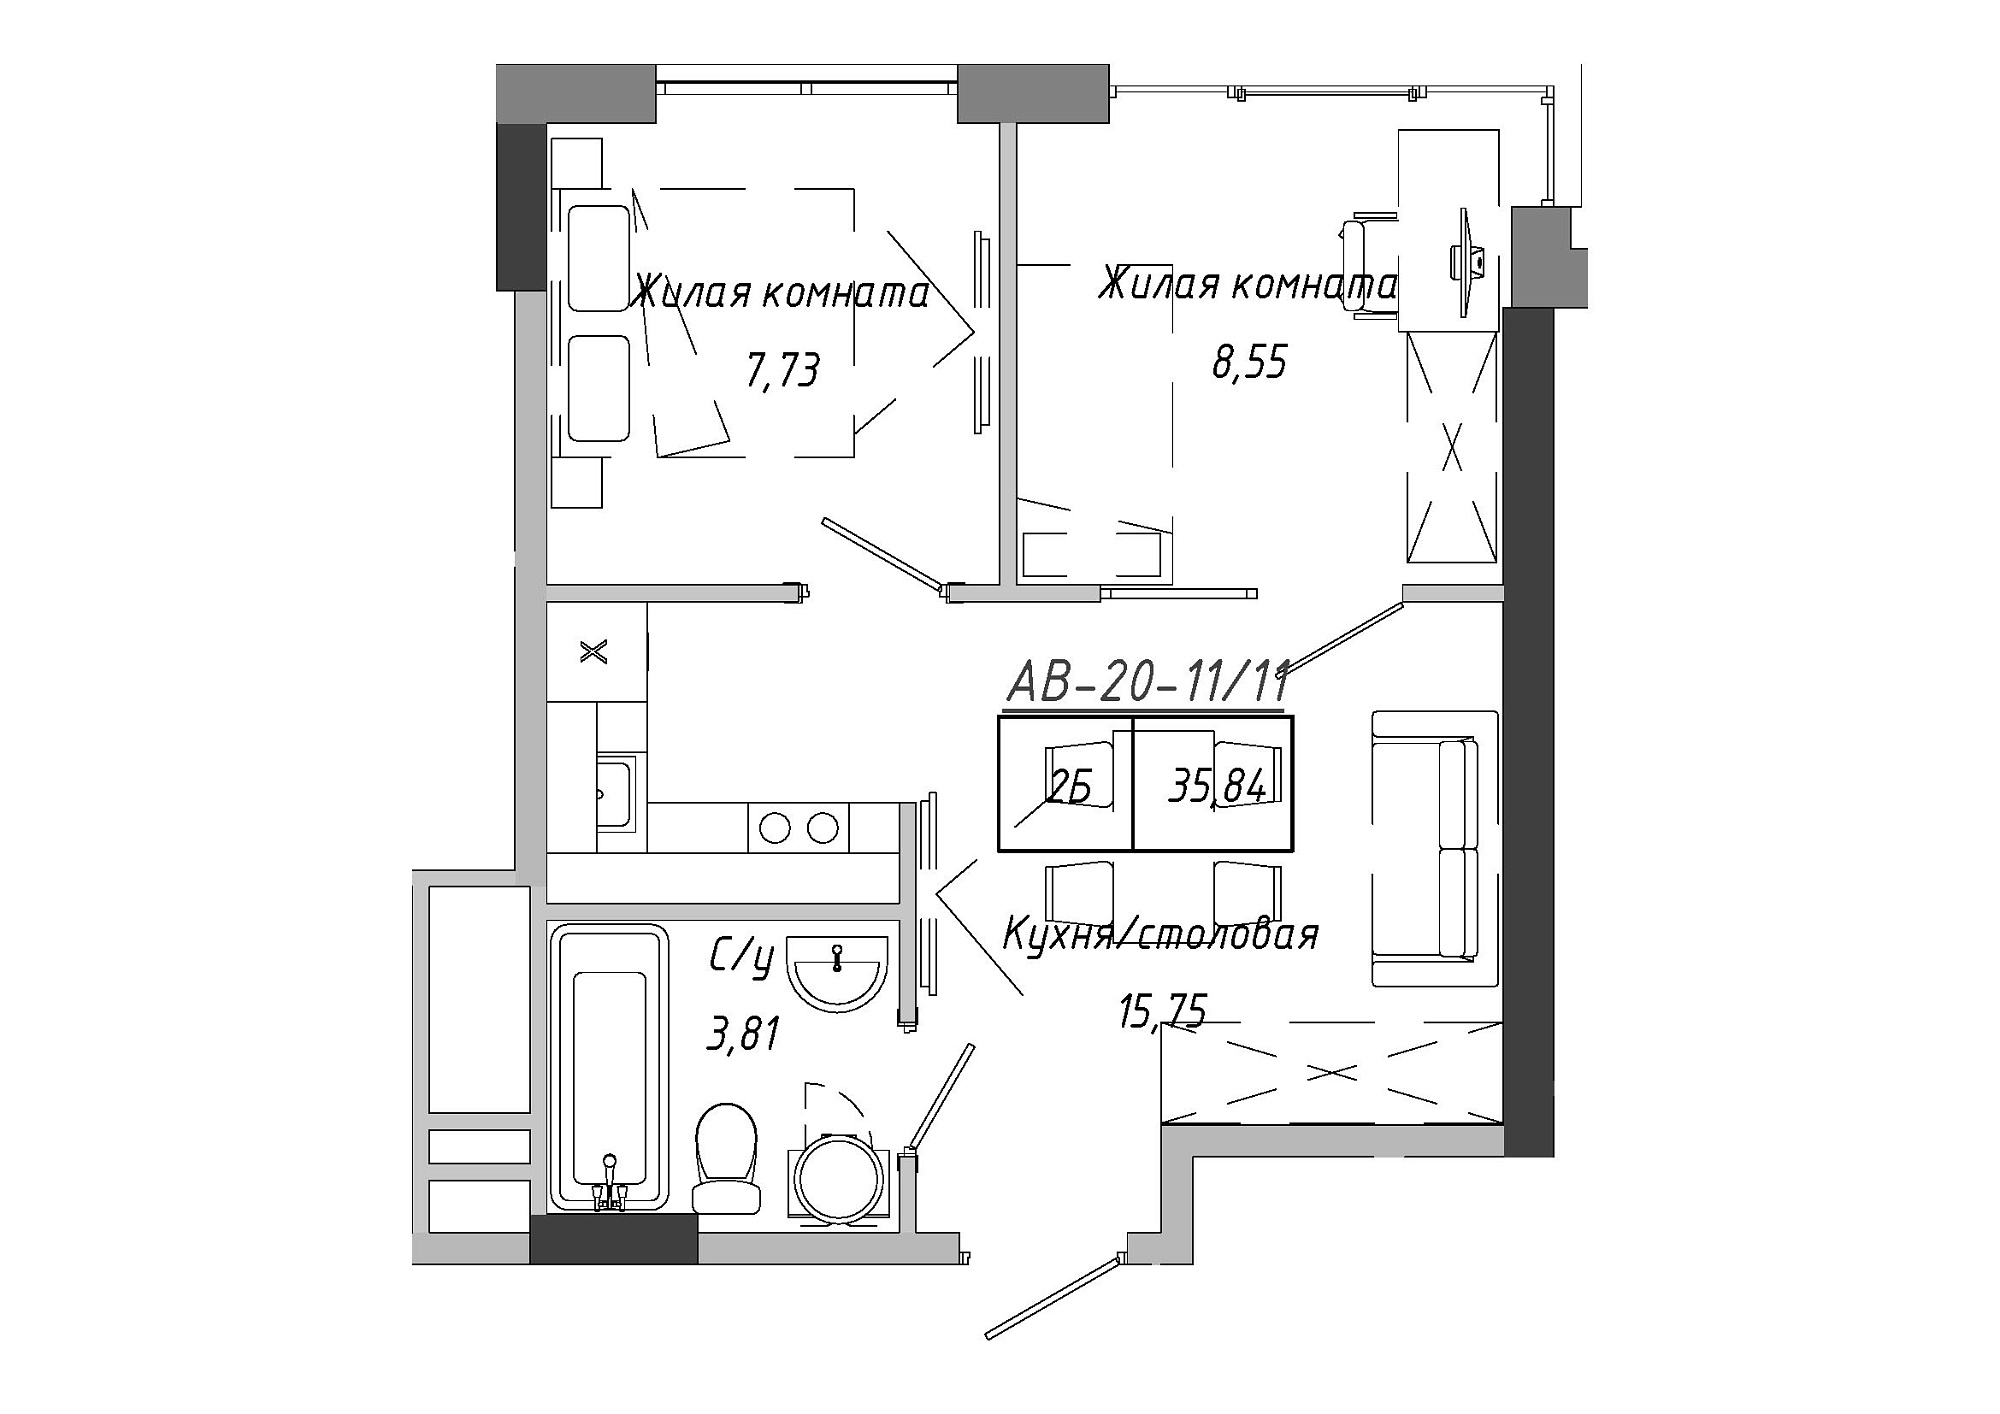 Планировка 2-к квартира площей 36.12м2, AB-20-11/00011.